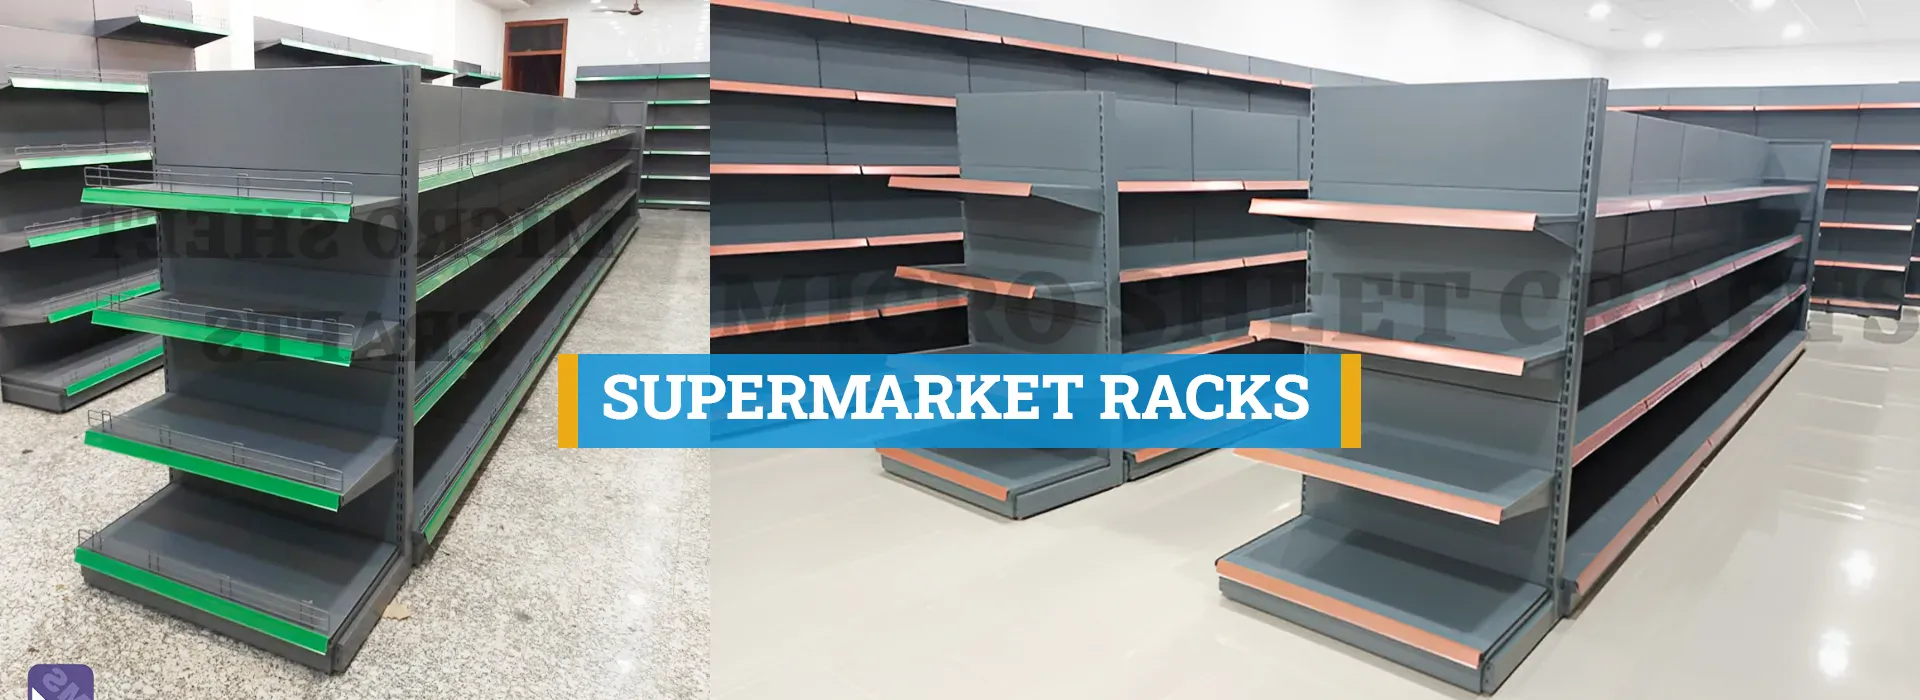 Supermarket Racks